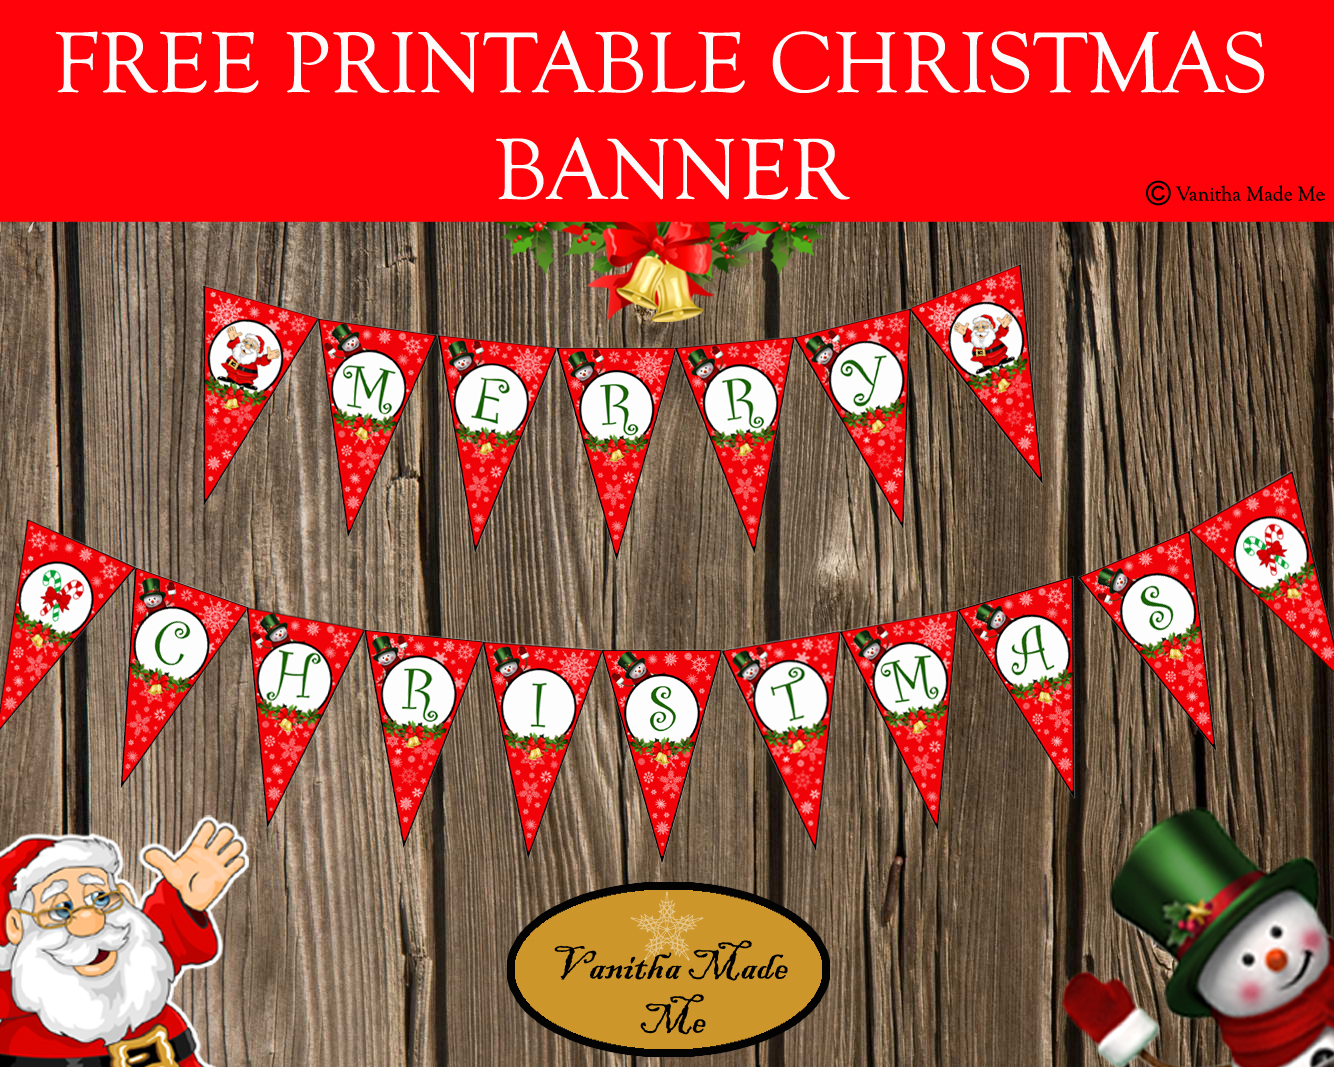 Diy Free Printable Christmas Banner | Vanitha Made Me - Free Printable Christmas Banner